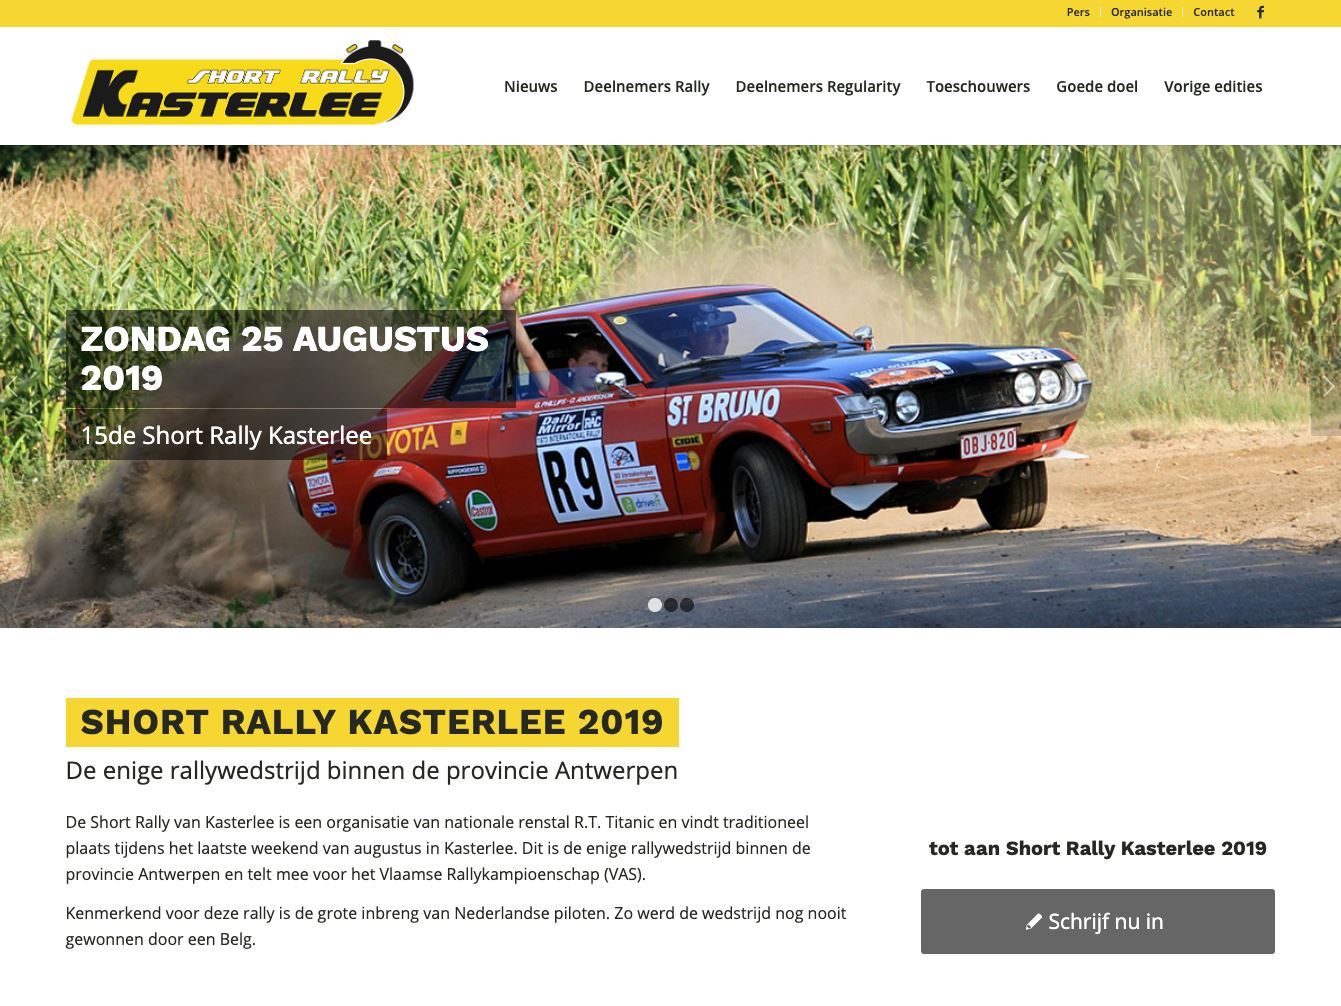 Afbeelding van website Short Rally Kasterlee